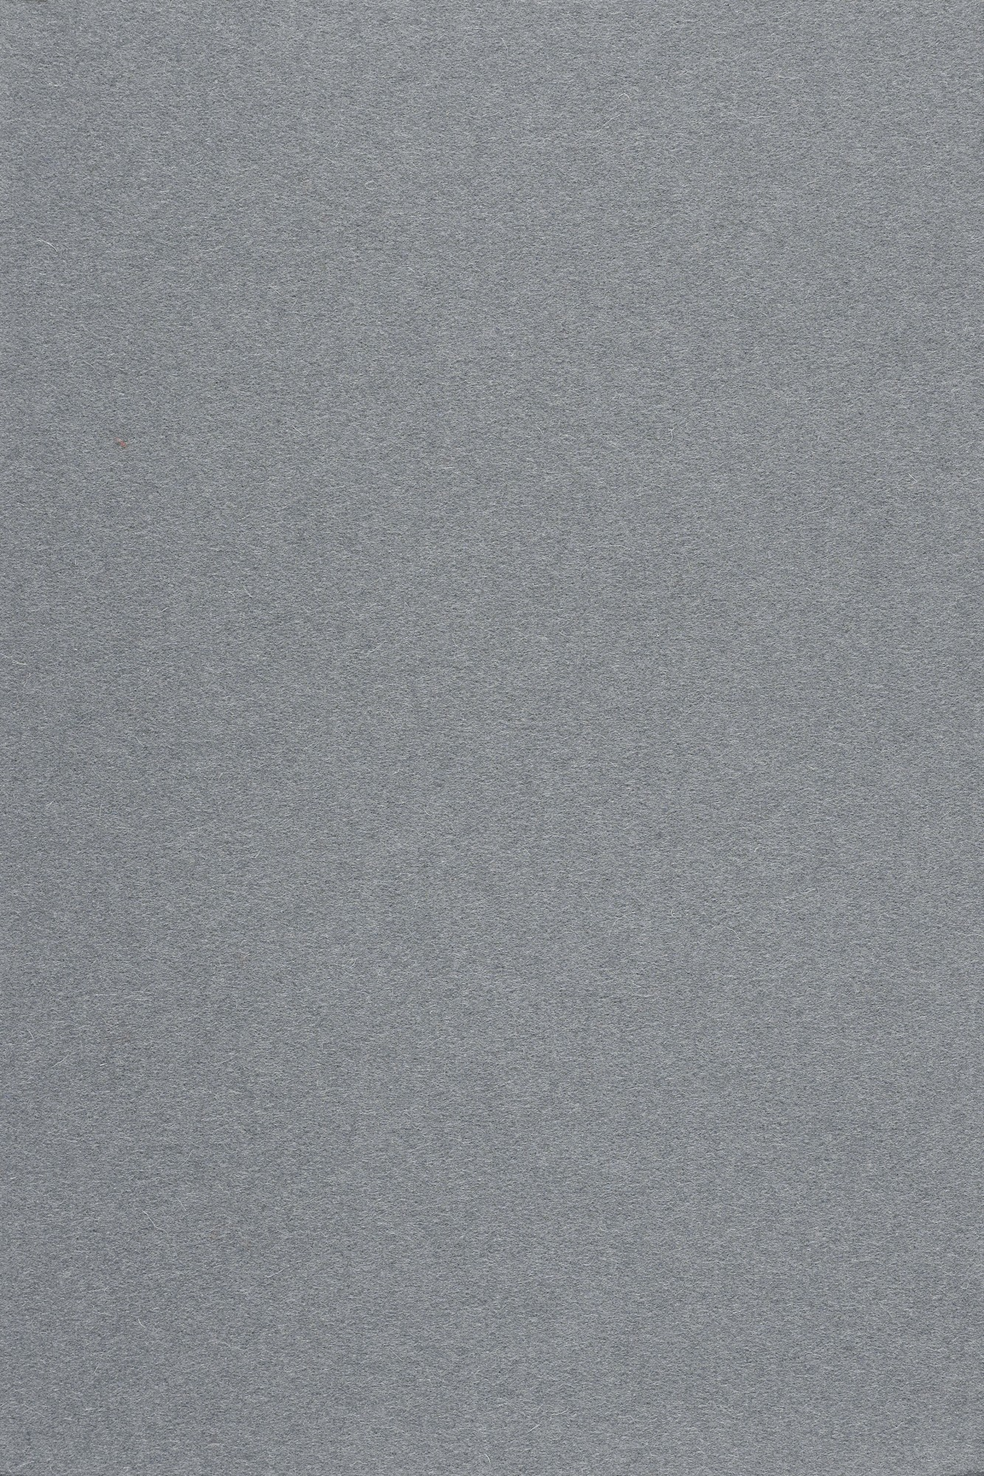 Fabric sample Divina 3 173 grey